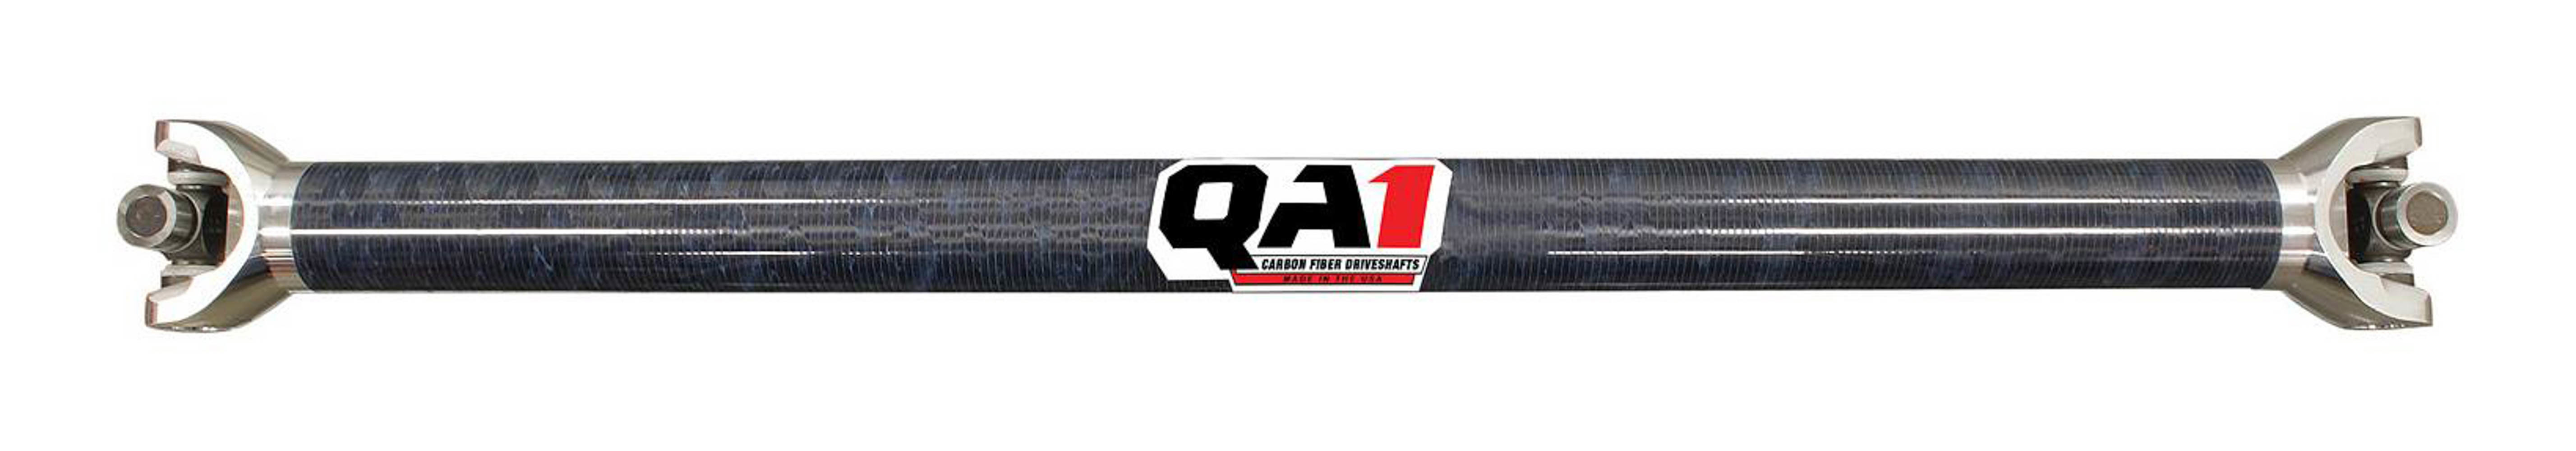 QA1 JJ-12216 Drive Shaft, Dirt Modified, 32.5 in Long, 2.25 in OD, 1310 U-Joints, 8 in Slip Yoke, Carbon Fiber, Universal, Each